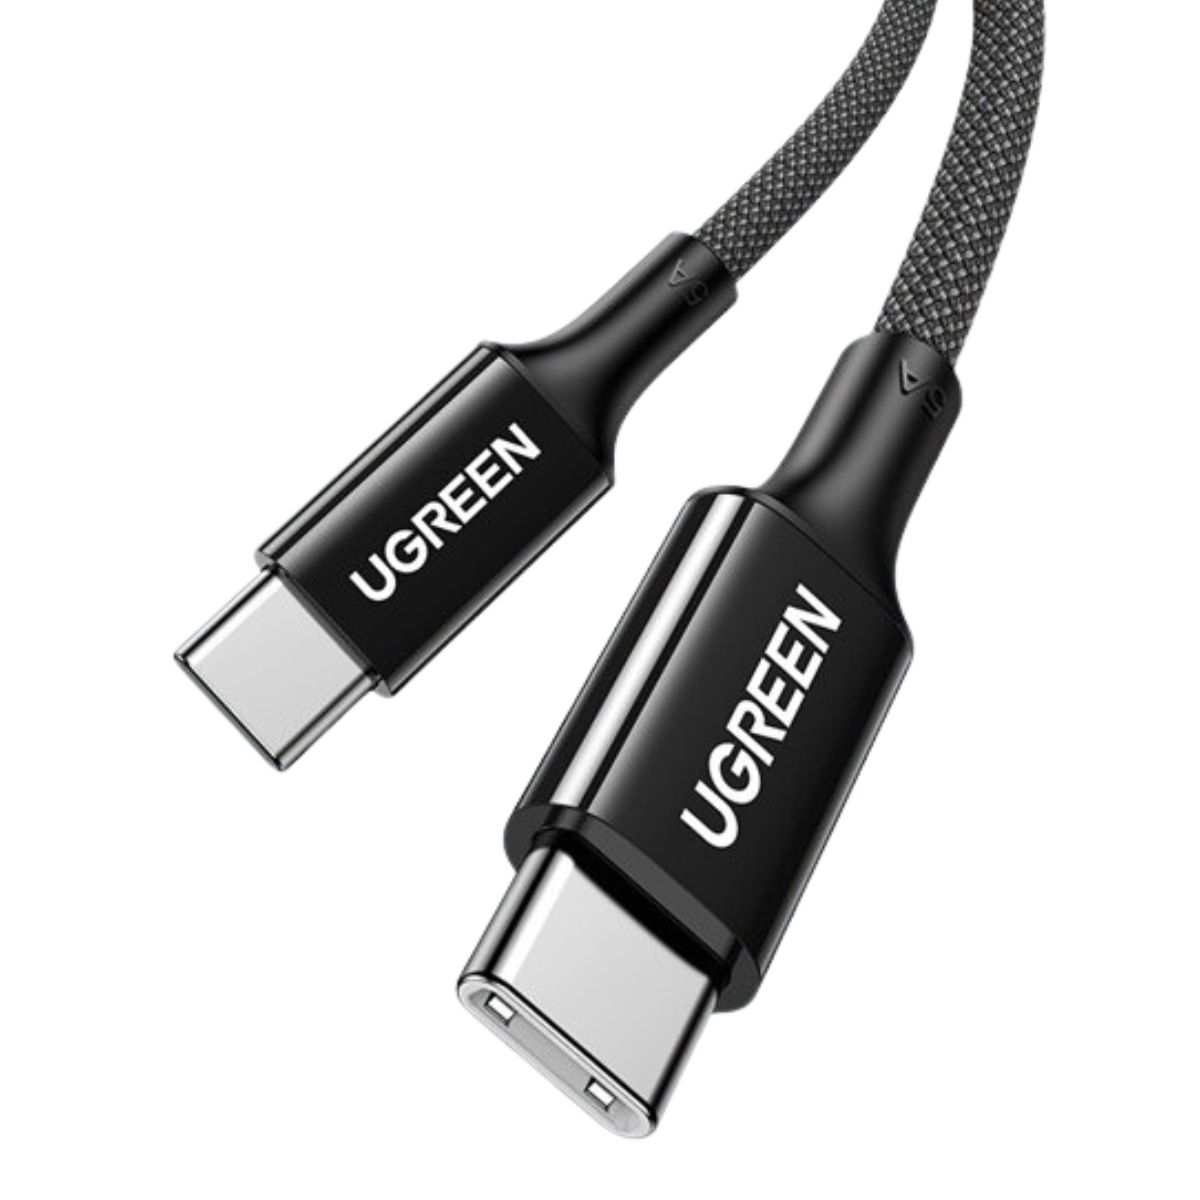 Cáp sạc nhanh silicone dài 1,5m USB type C Ugreen 15276 US557 màu đen, tốc độ truyền 480Mbps, hỗ trợ sạc nhanh 5A